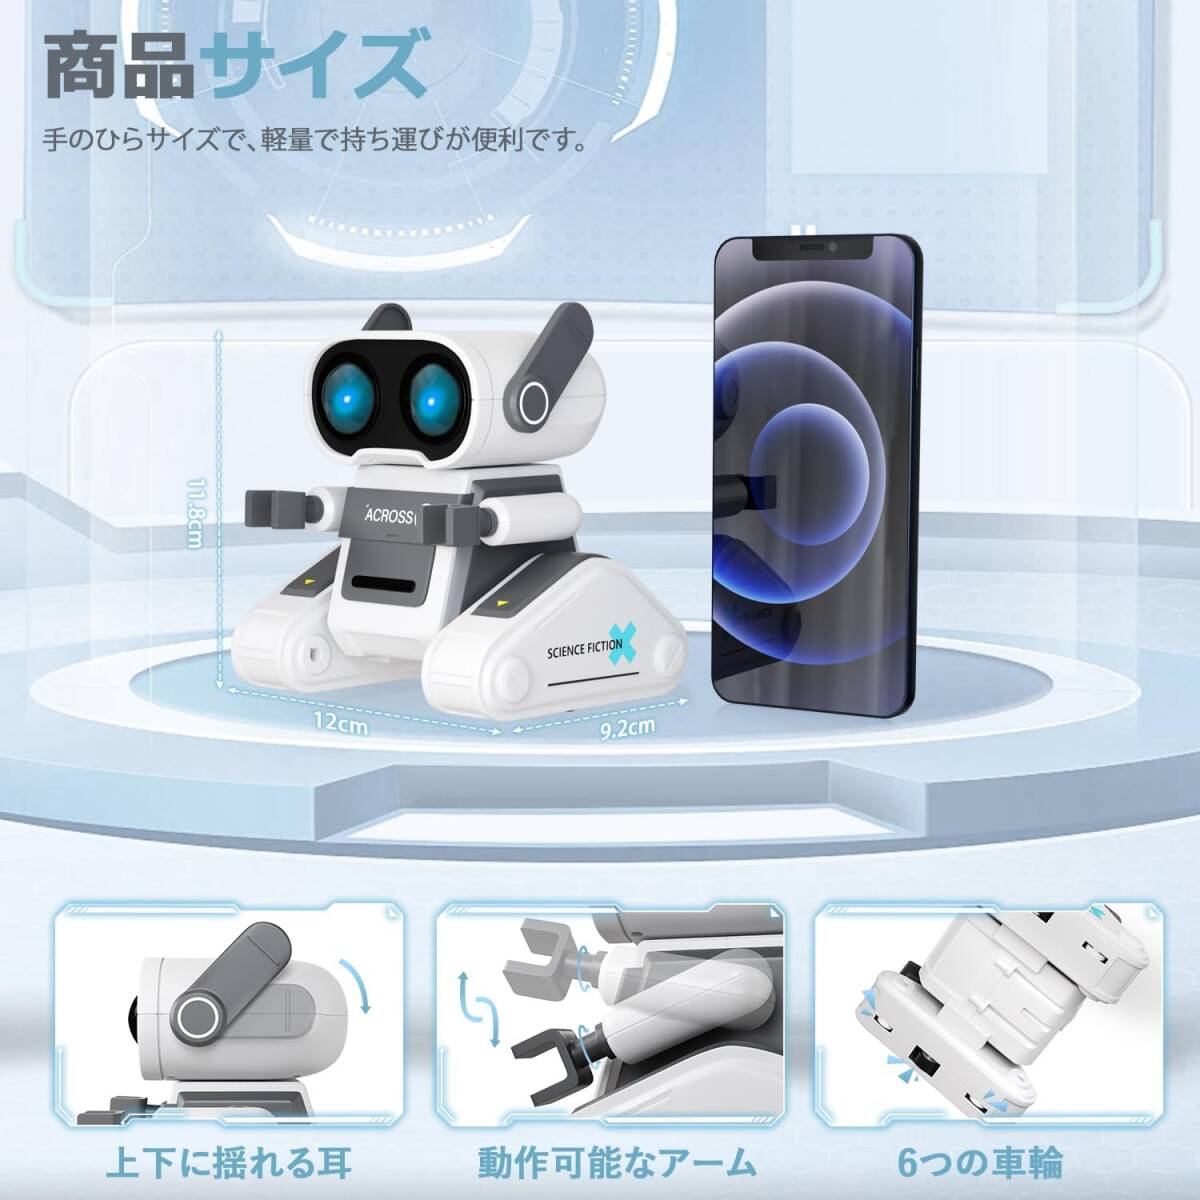 ホワイト 電動ロボット おもちゃ ラジコンロボット 2.4GHz 360°回転 LEDライト 音楽 デモ 多機能ロボット USB充_画像7